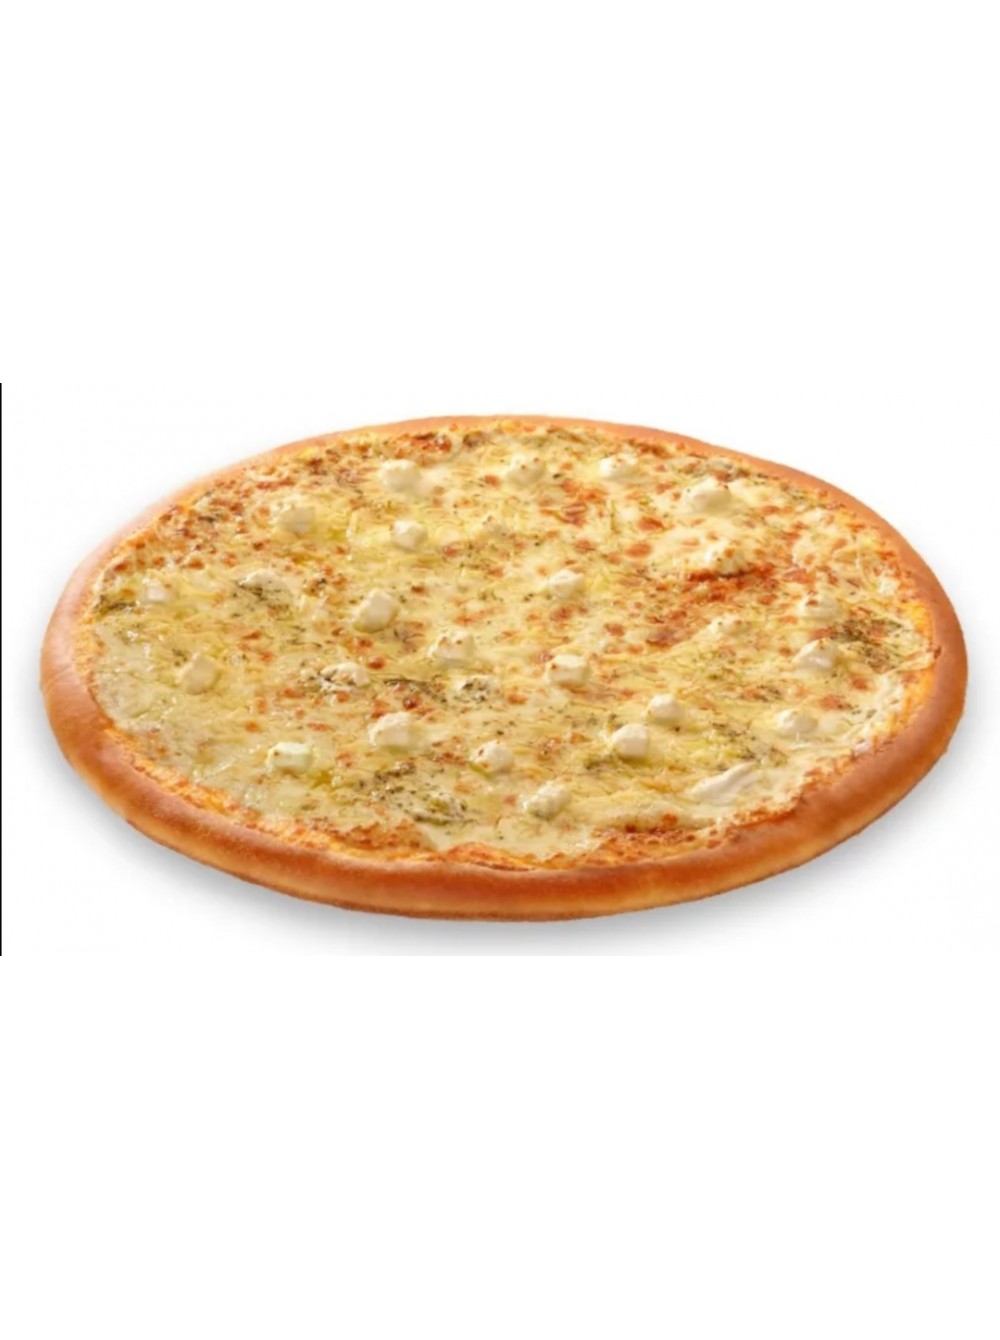 пицца четыре сыра фото на белом фоне фото 117